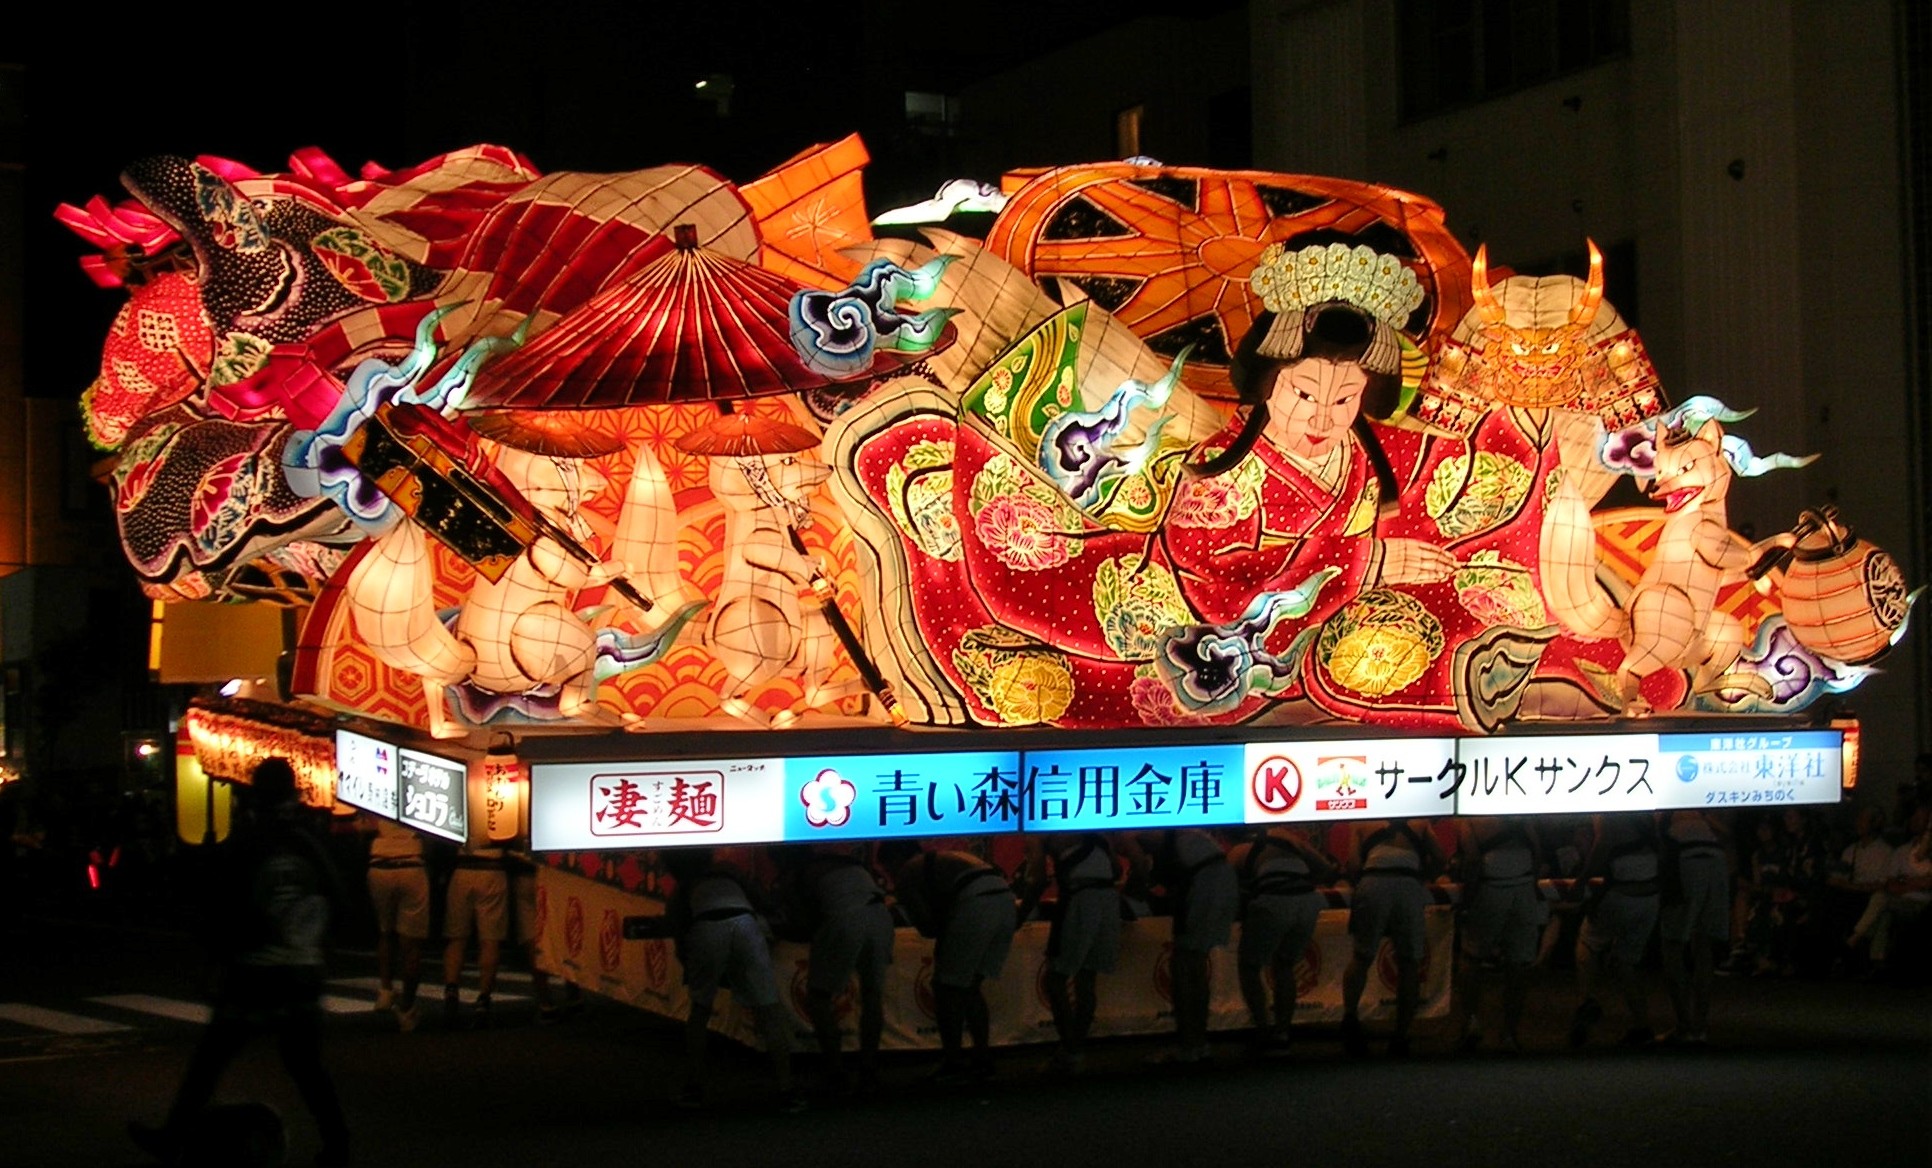 Lạc vào thế giới của những vị thần tại lễ hội Nebuta Matsuri rực rỡ nhất Nhật Bản